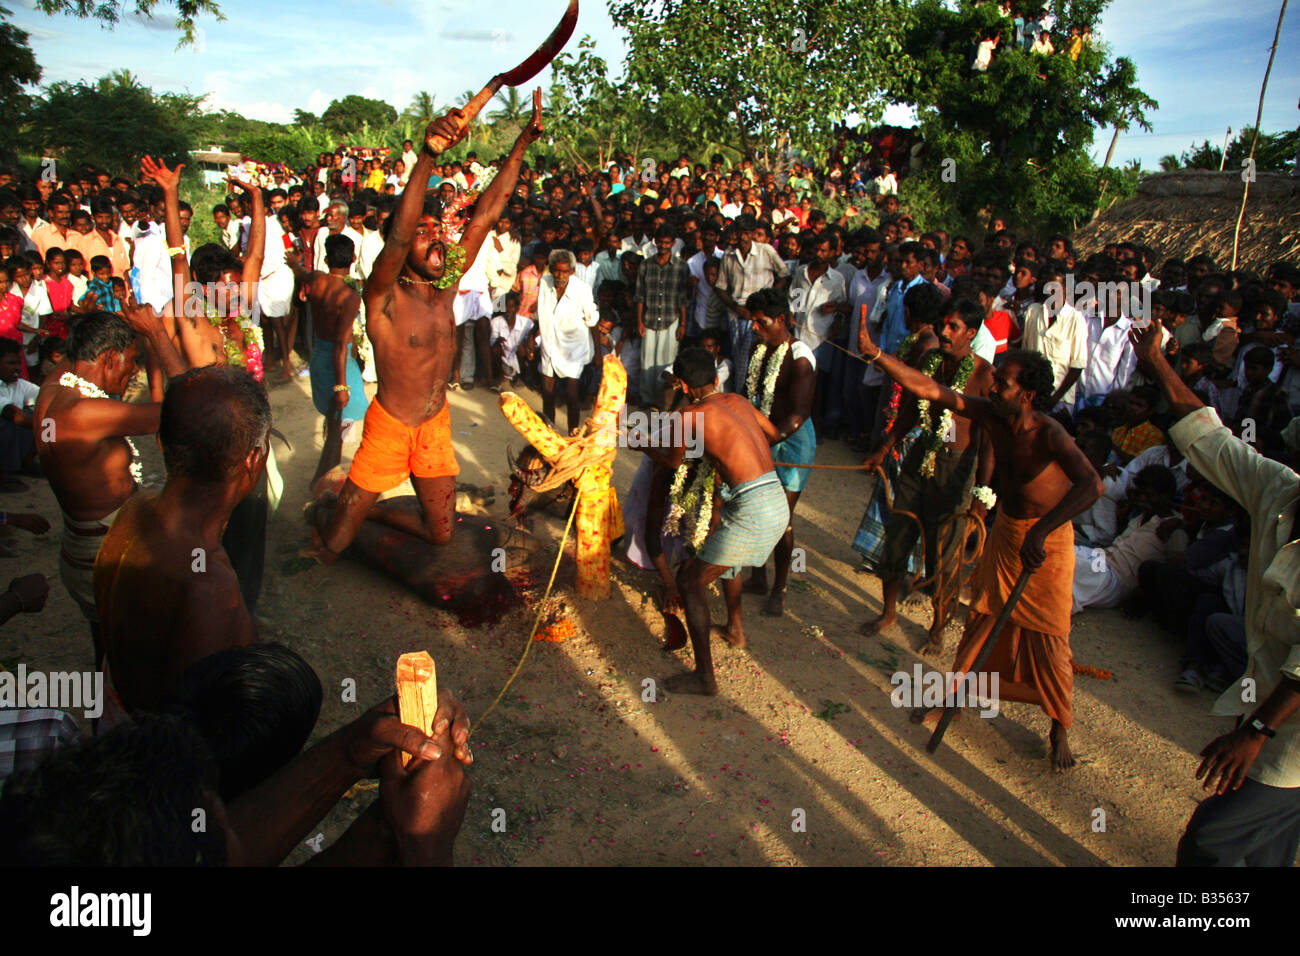 Un homme, qui vient de décapiter un boeuf dans le cadre d'un sacrifice rituel au dieu Murugan, sauts de joie lors d'un festival. Banque D'Images